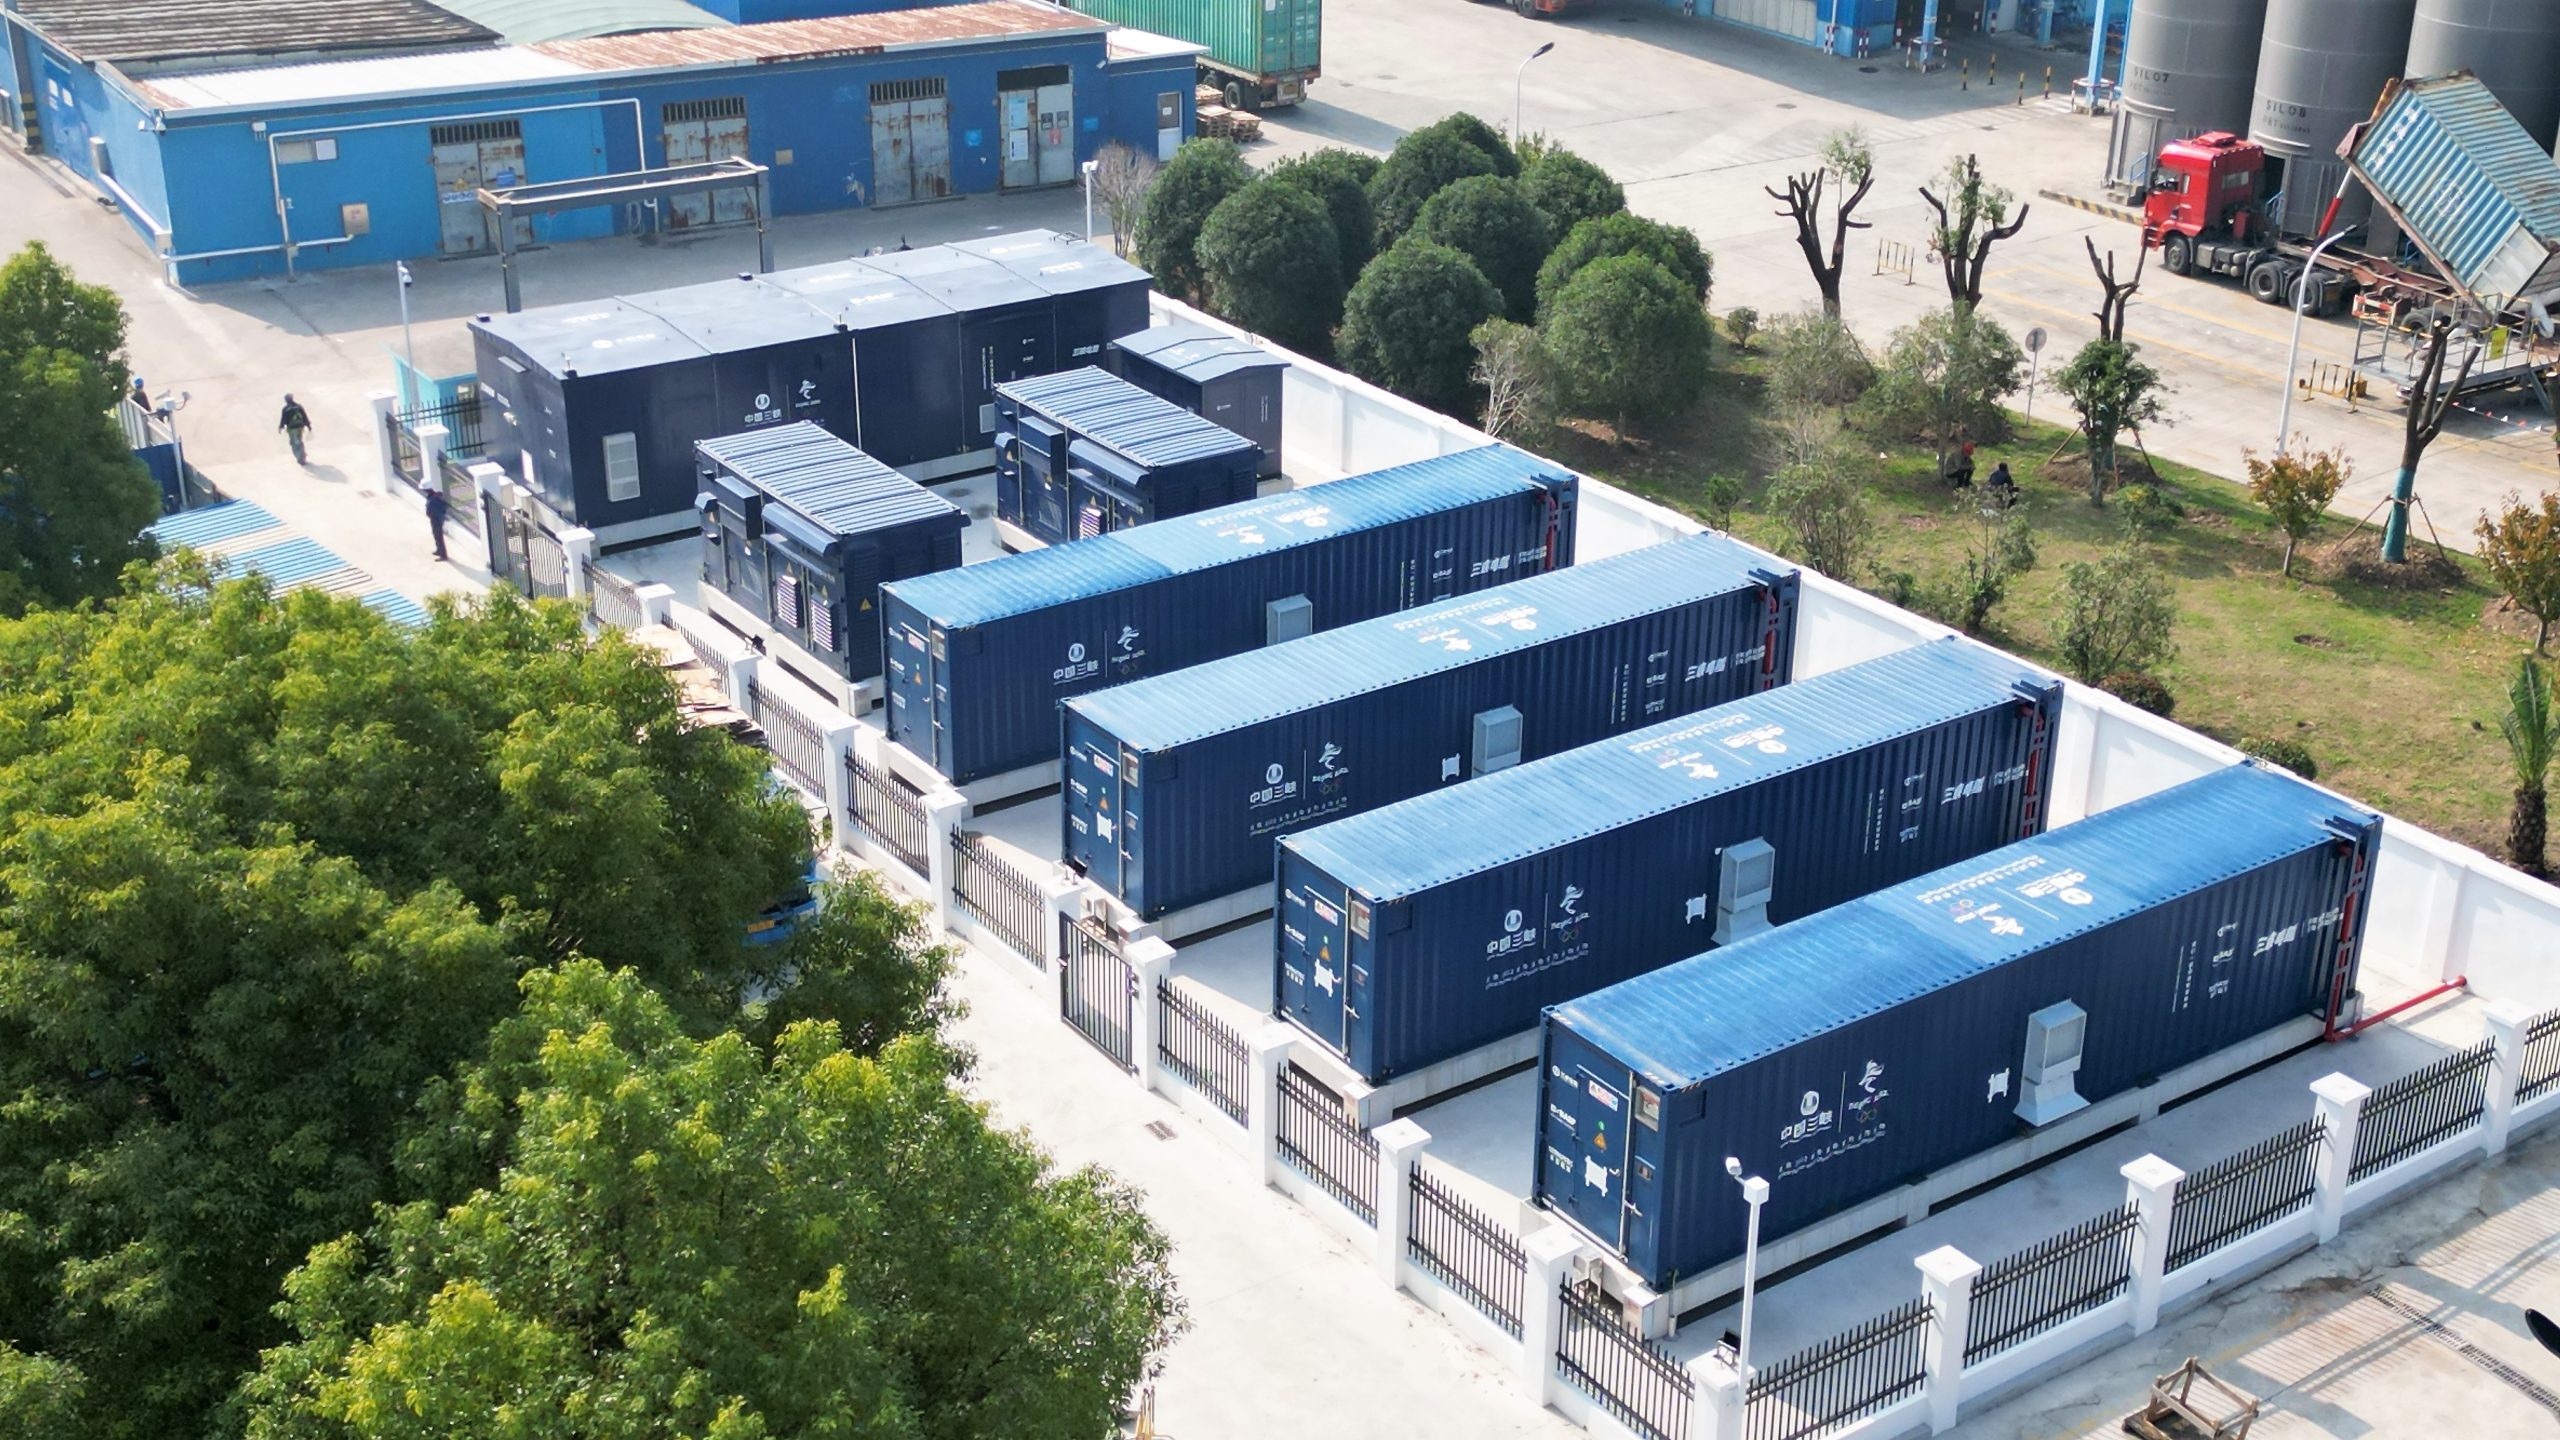 巴斯夫在国内的首个企业储能电站在大中华区总部投入运营-有解塑料观察